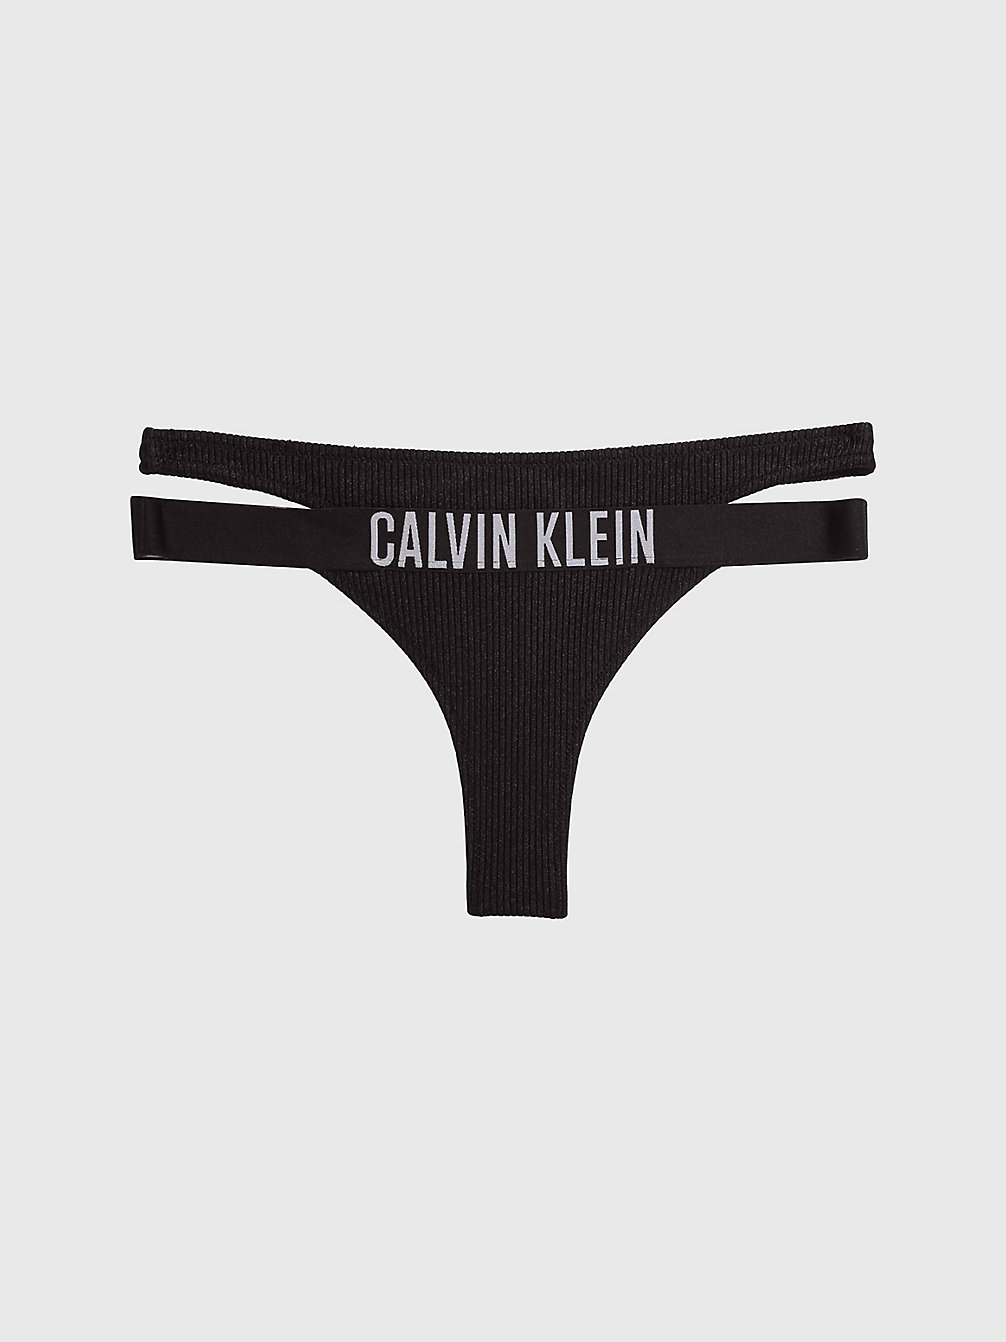 PVH BLACK Thong Bikinihosen – Intense Power undefined Damen Calvin Klein